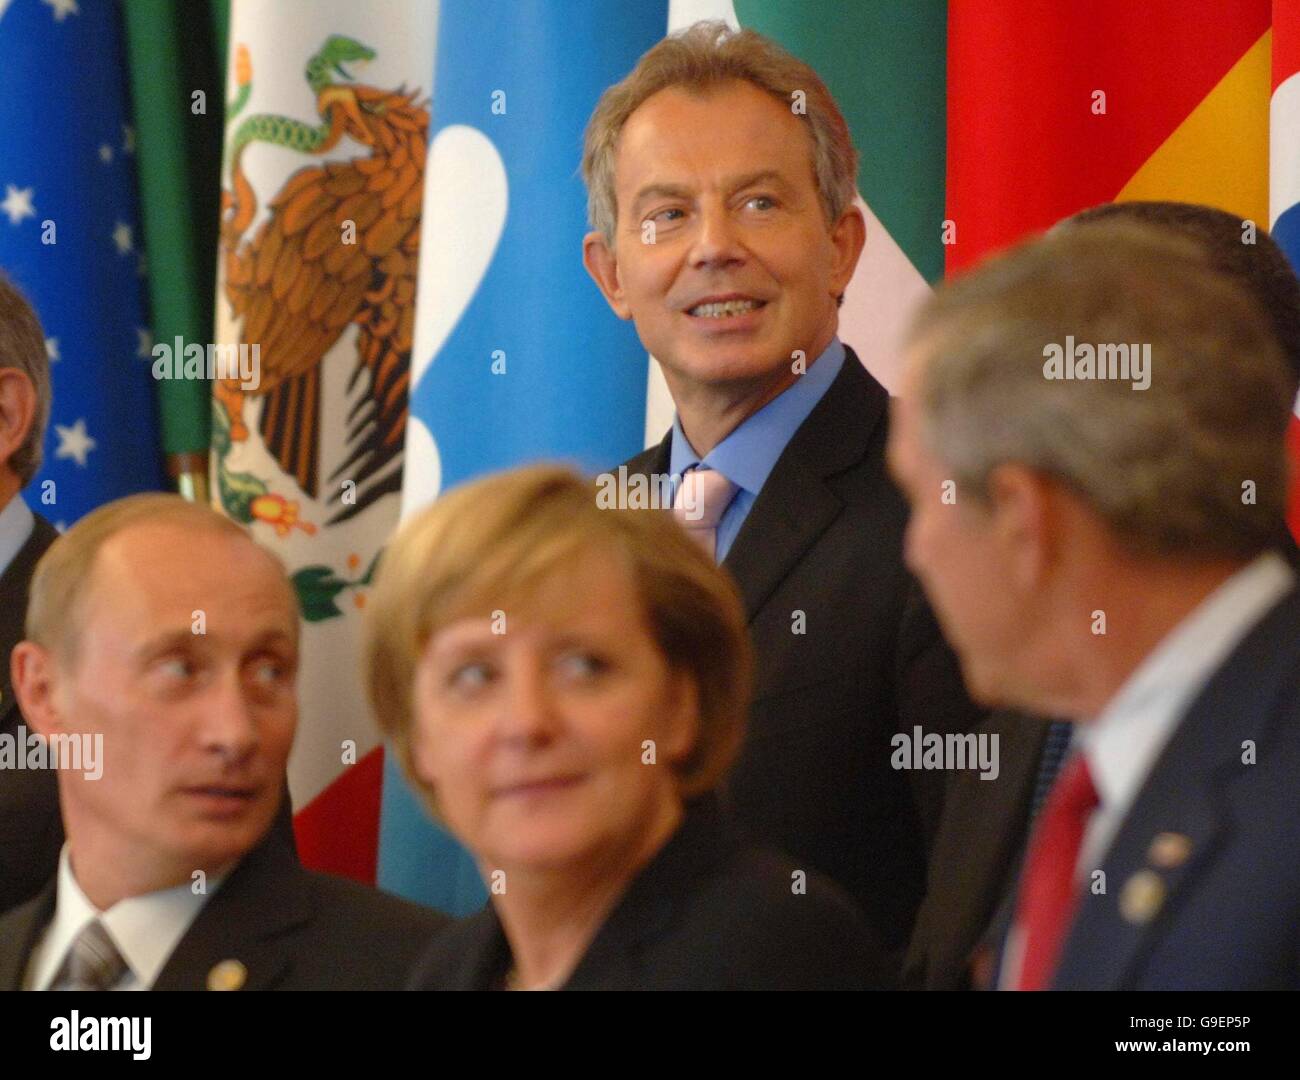 Le Premier ministre britannique Tony Blair pose une photo de famille au président russe Vladimir Poutine, à la chancelière allemande Angela Merkel, au président américain George W Bush et à d'autres dirigeants internationaux invités lors du sommet du G8 à Saint-Pétersbourg, en Russie. Banque D'Images